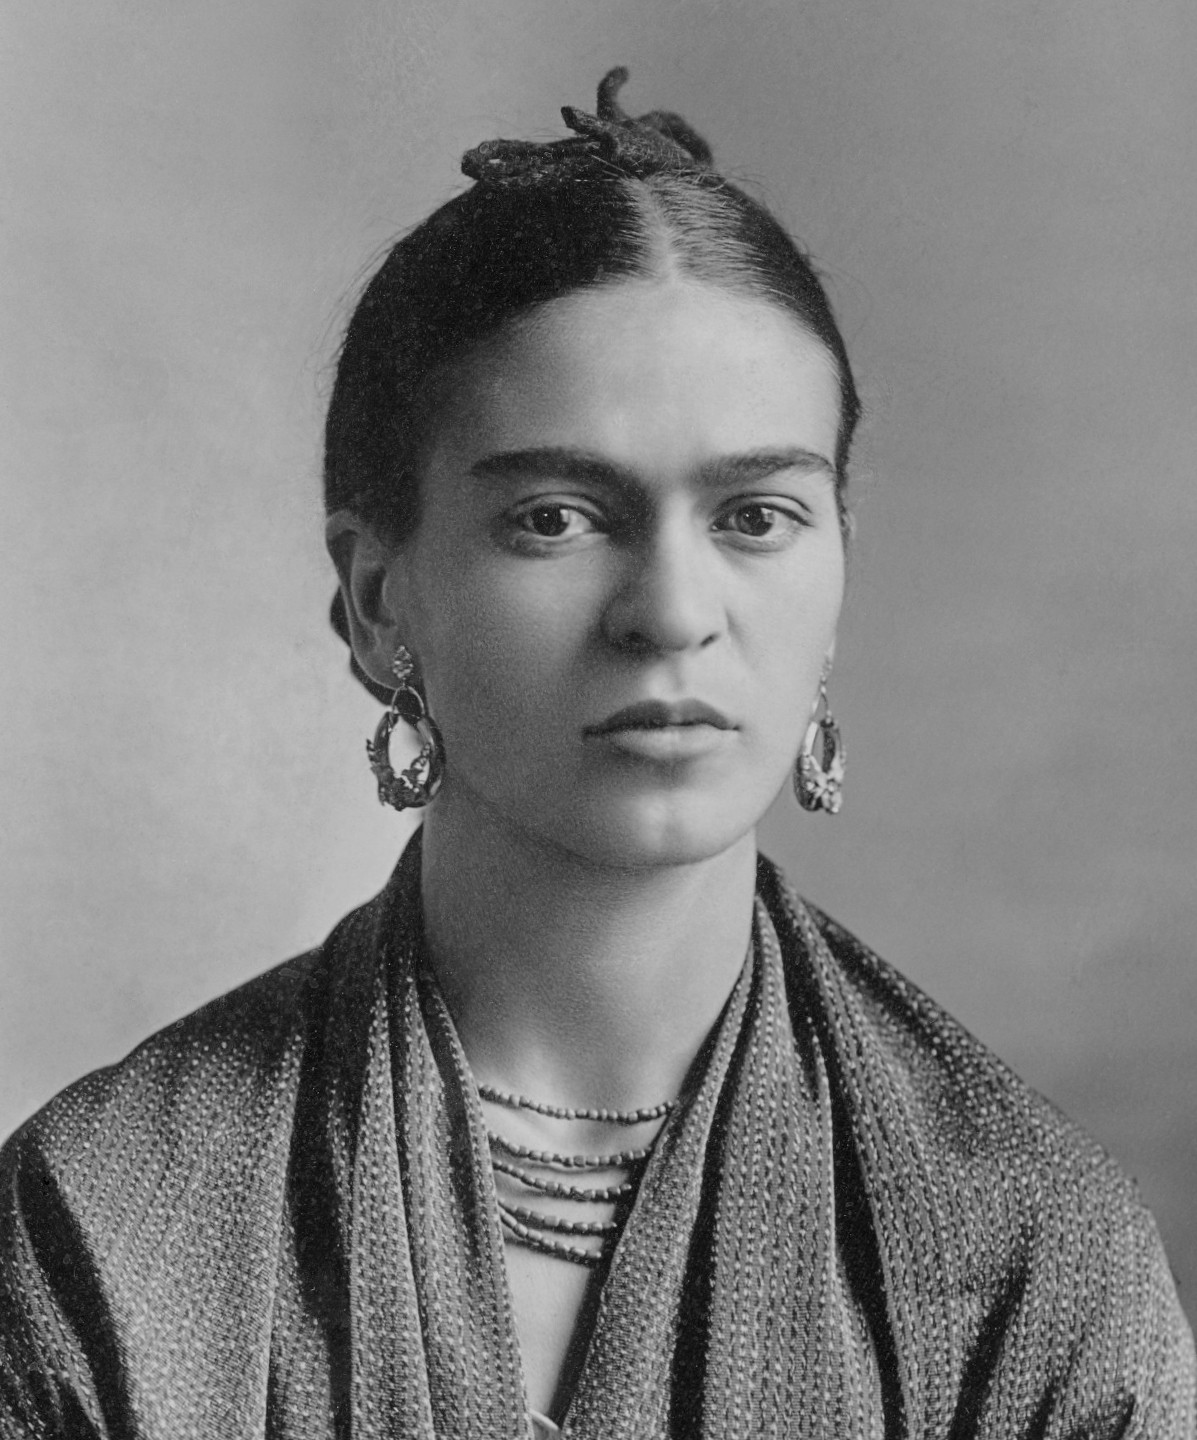 Fotografia de Frida Kahlo realitzada per Guillermo Kahlo